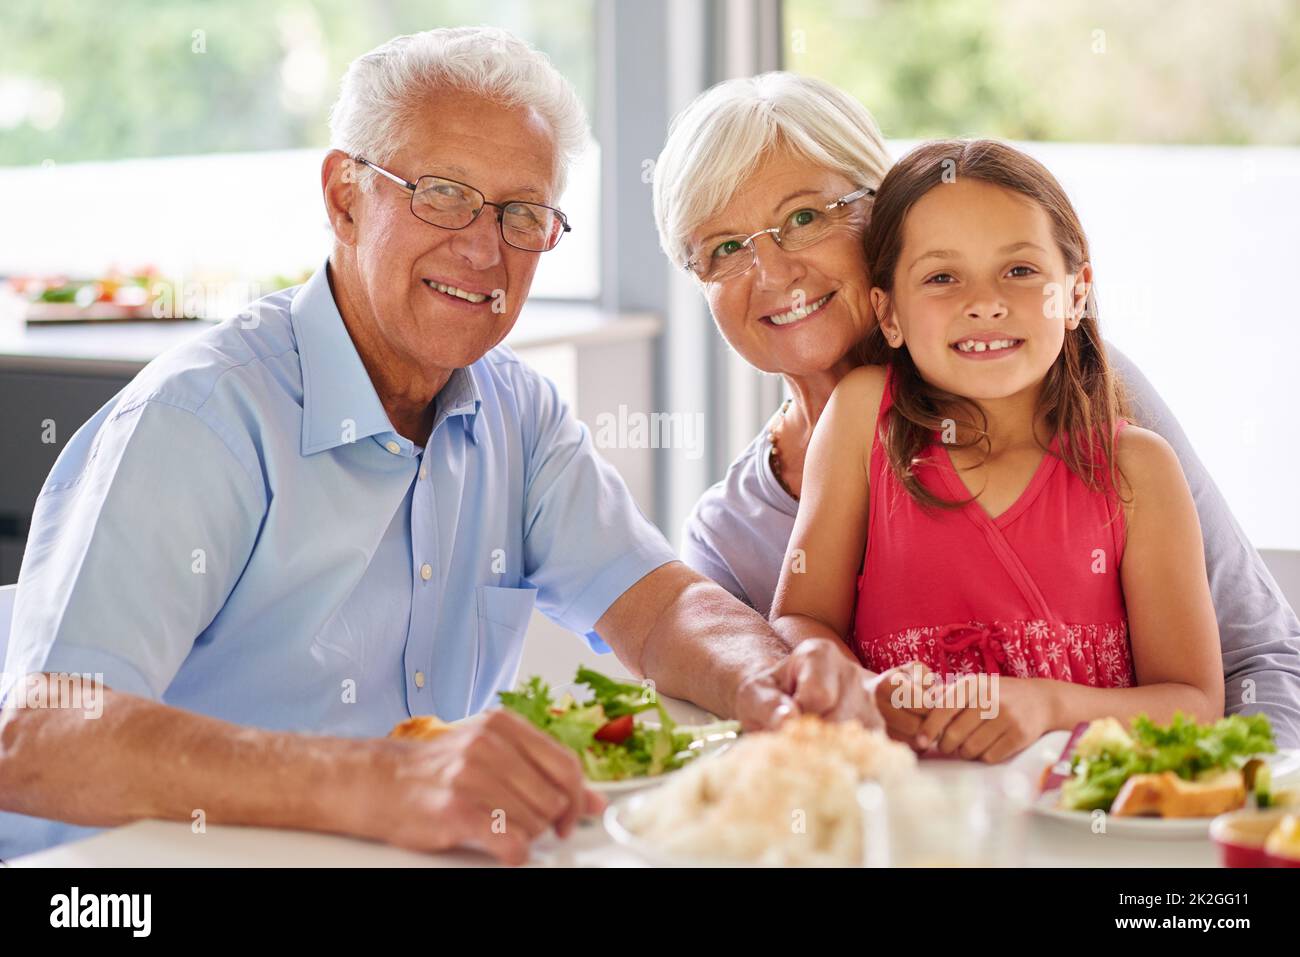 Gut essen hat sie spritulich gehalten. Porträt eines kleinen Mädchens, das mit ihren Großeltern zu Mittag gegessen hat. Stockfoto